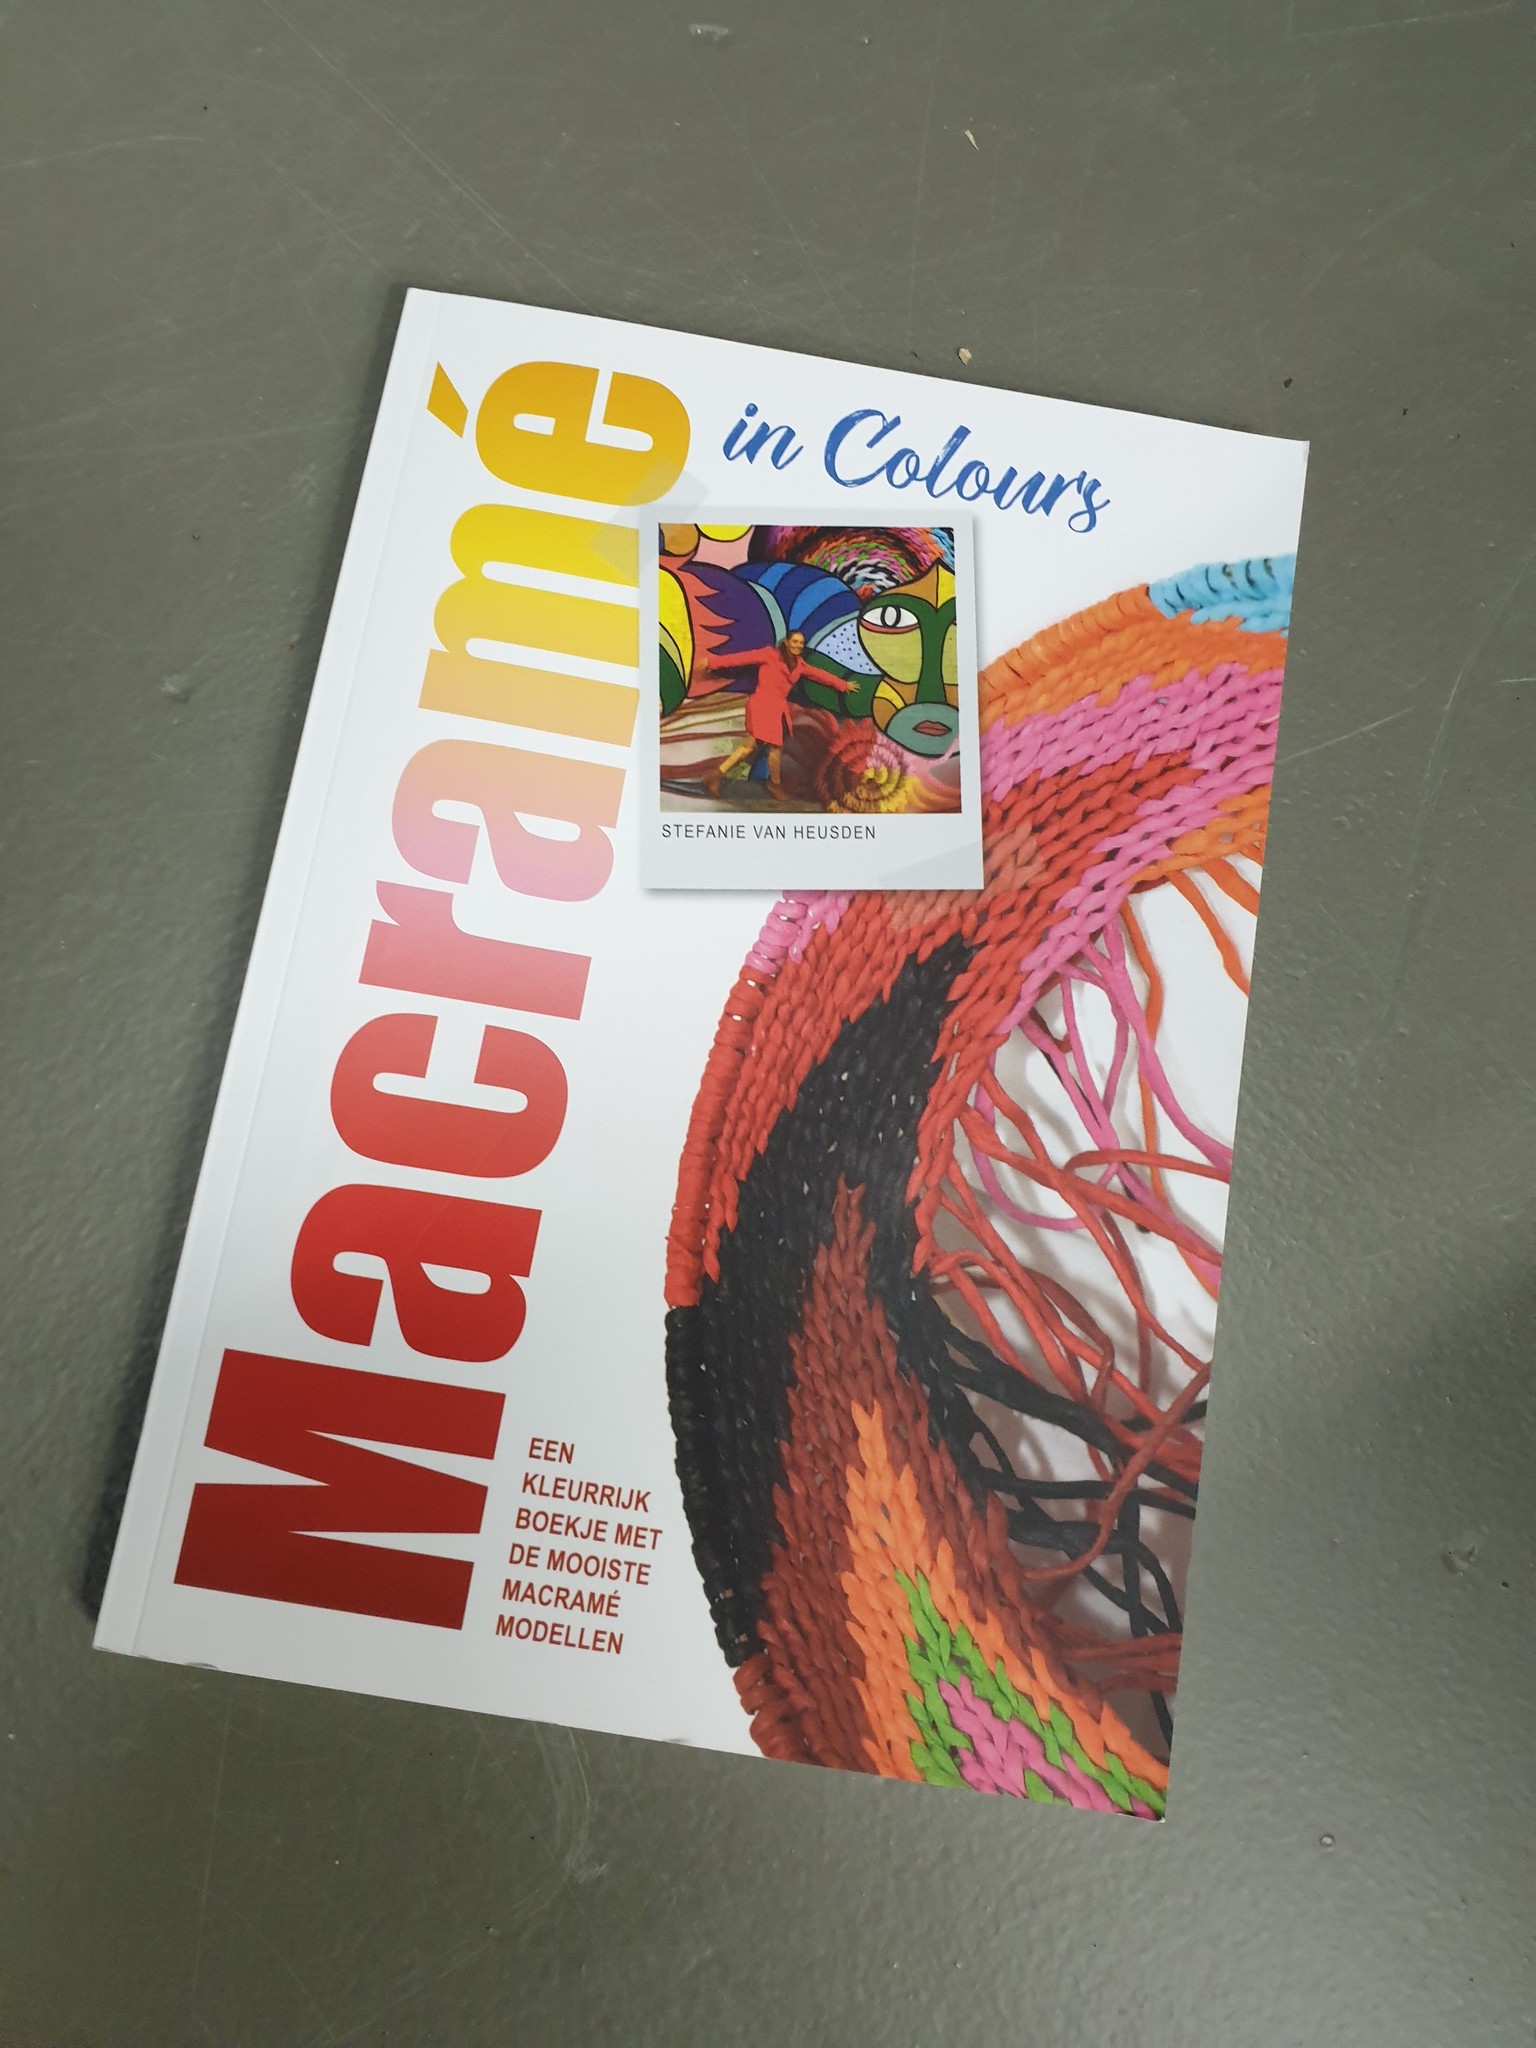 Zorgvuldig lezen Gluren criticus Macramé in colours - Stefanie van Heusden | Marlaine's boek reviews -  Marlaine.nl